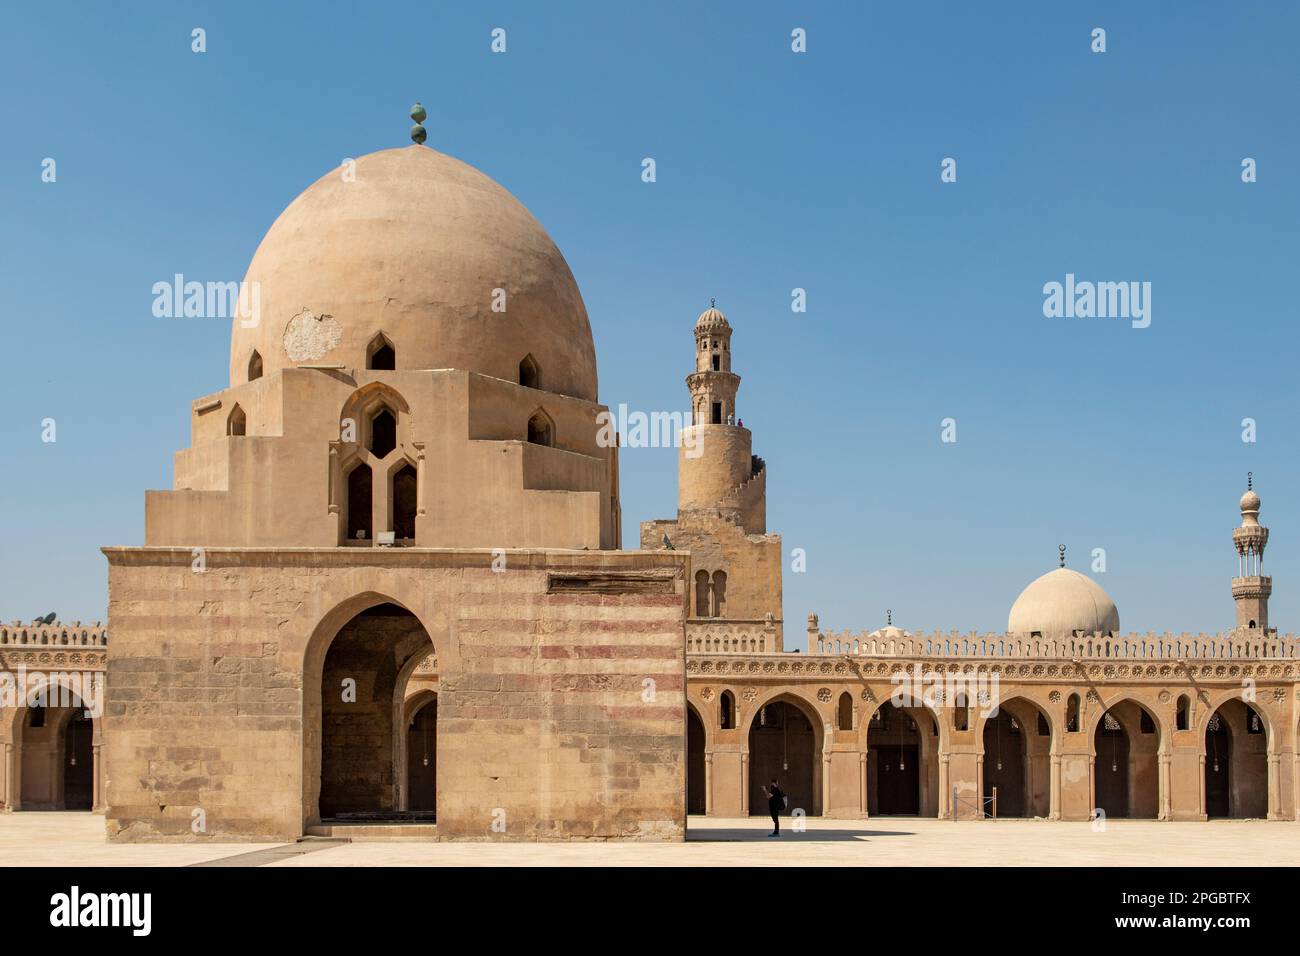 Fontaine dans la mosquée d'Ahmed Ibn Tulun, le Caire, Égypte Banque D'Images